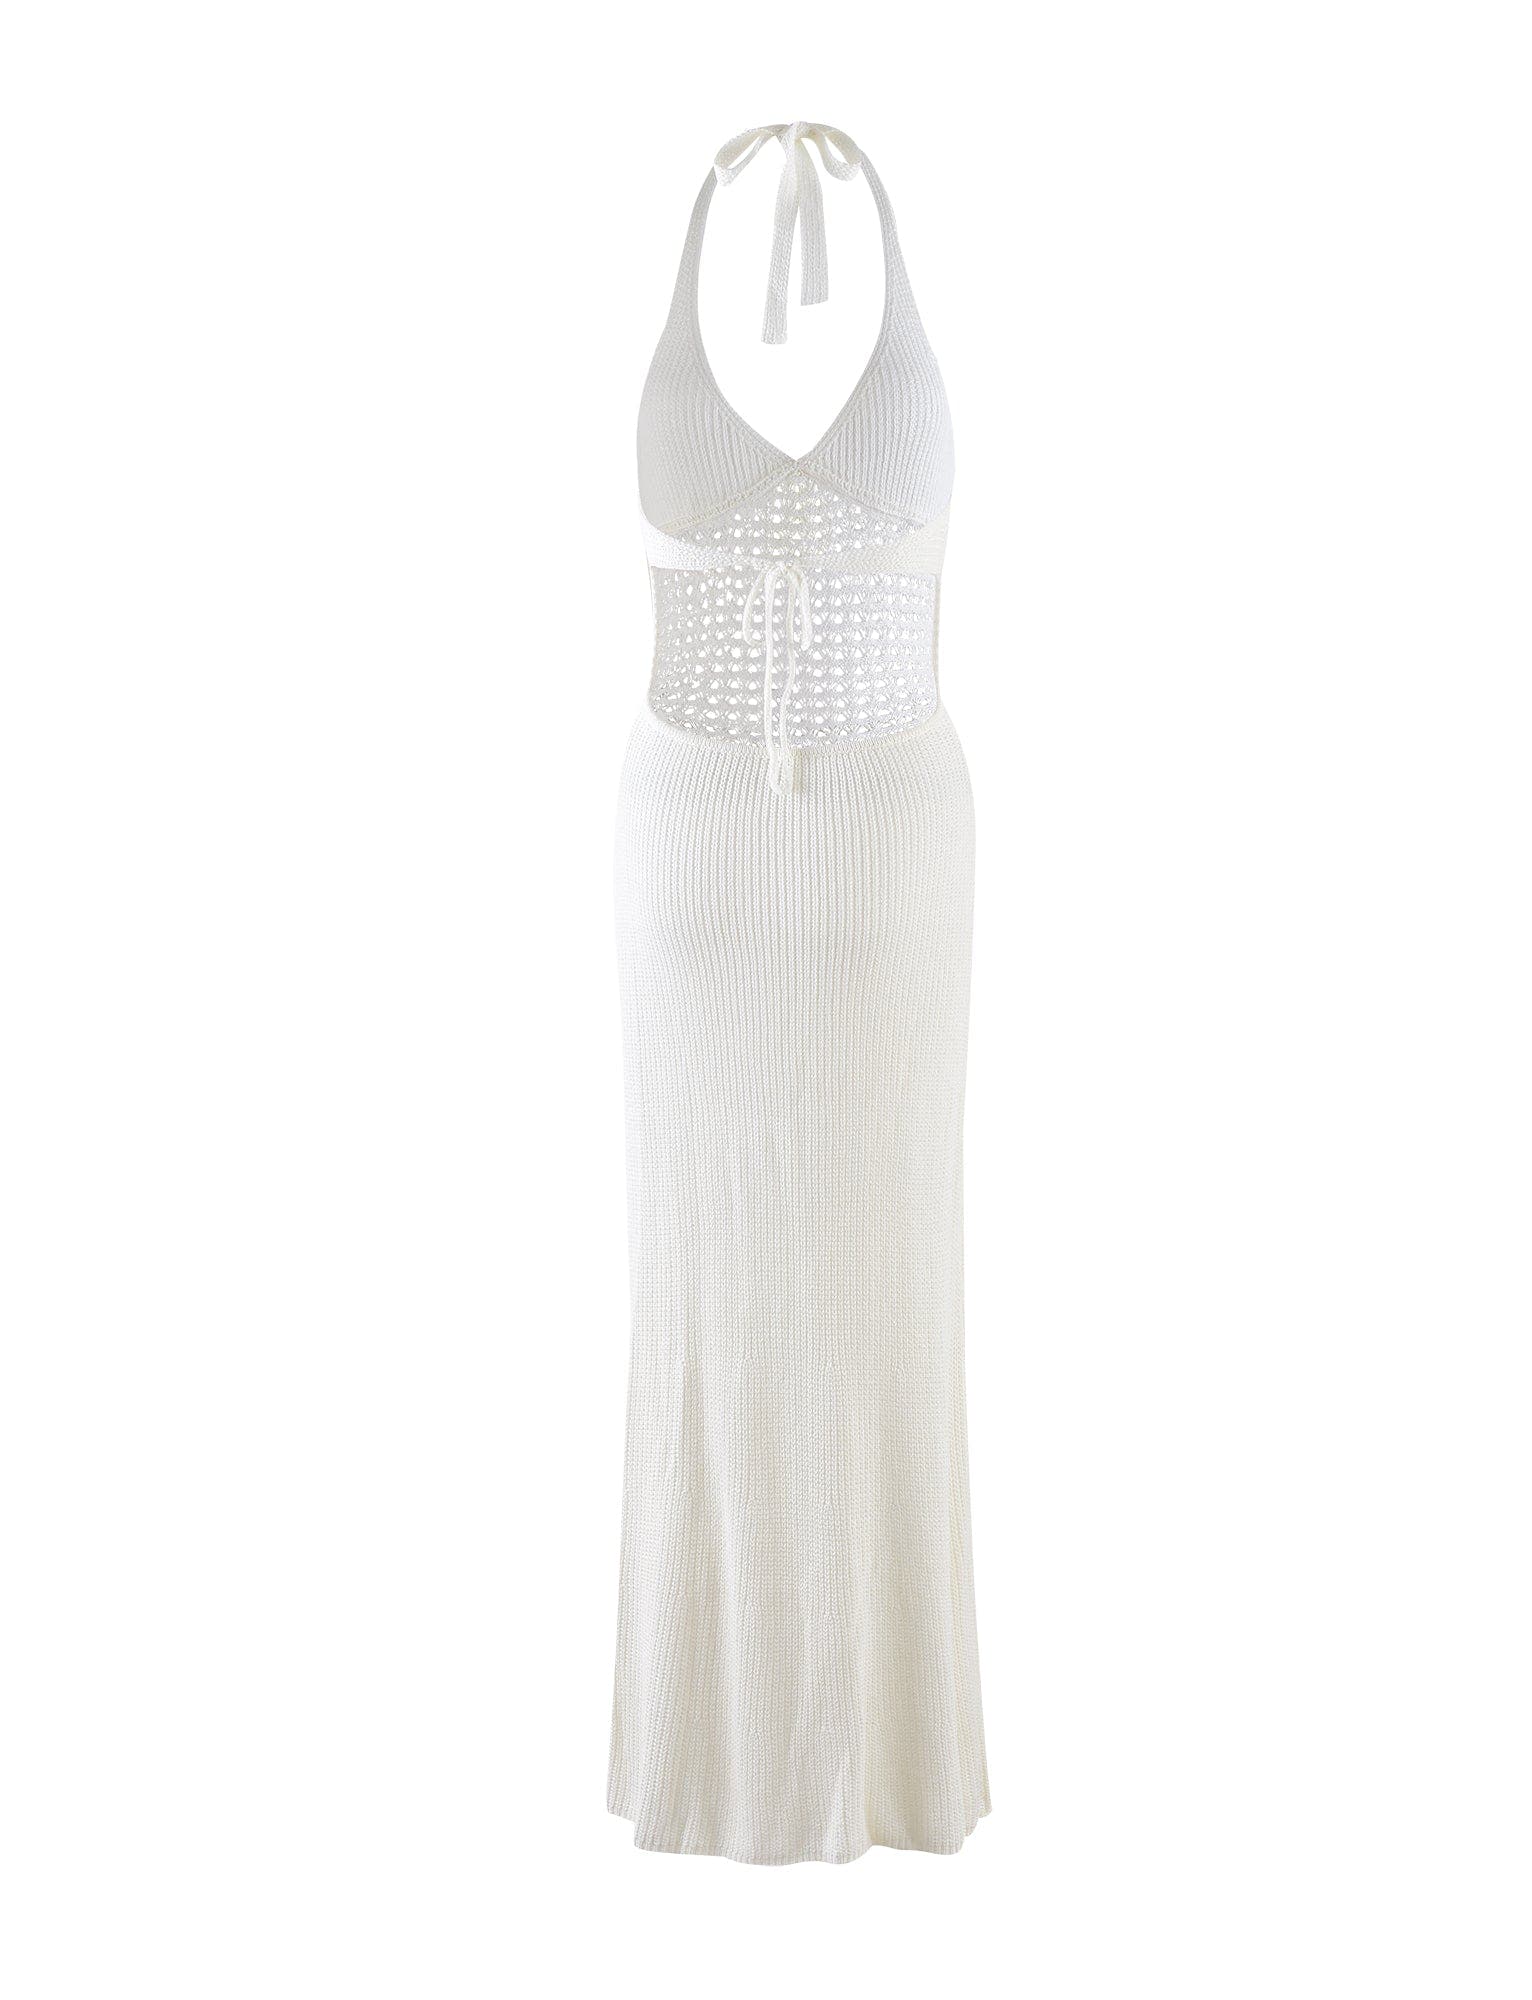 DELTA DRESS - WHITE